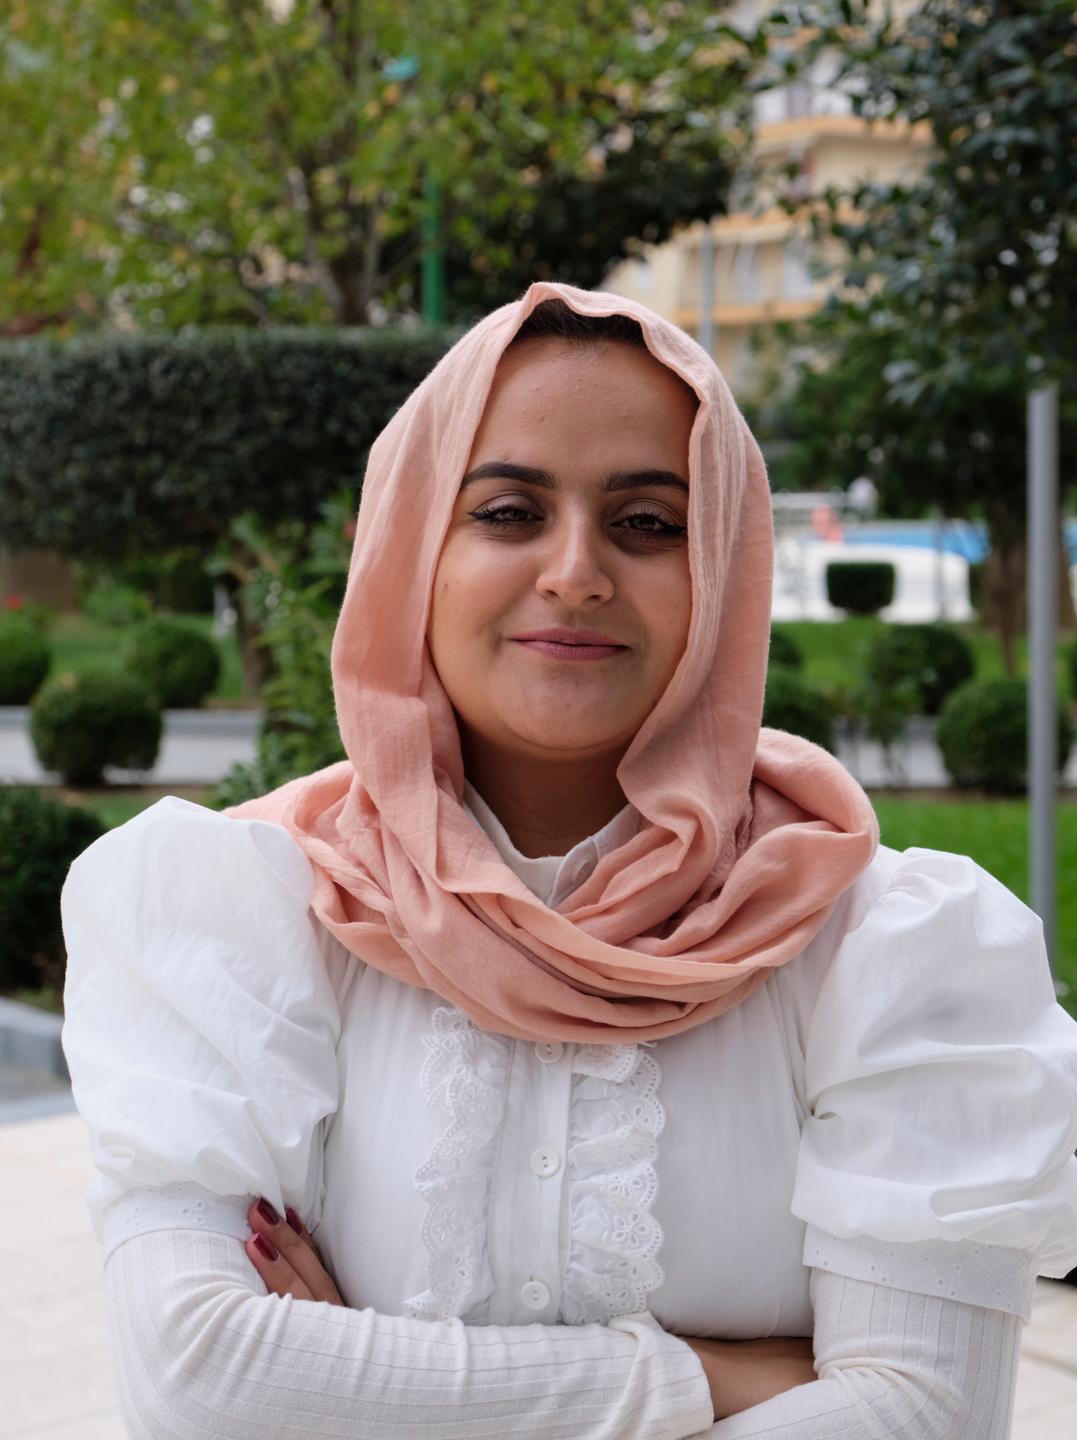 Beheshta Arghand steht in der albanischen Hotelanlage, trägt ein lockeres rosa Kopftuch, eine weiße Bluse und lächelt.